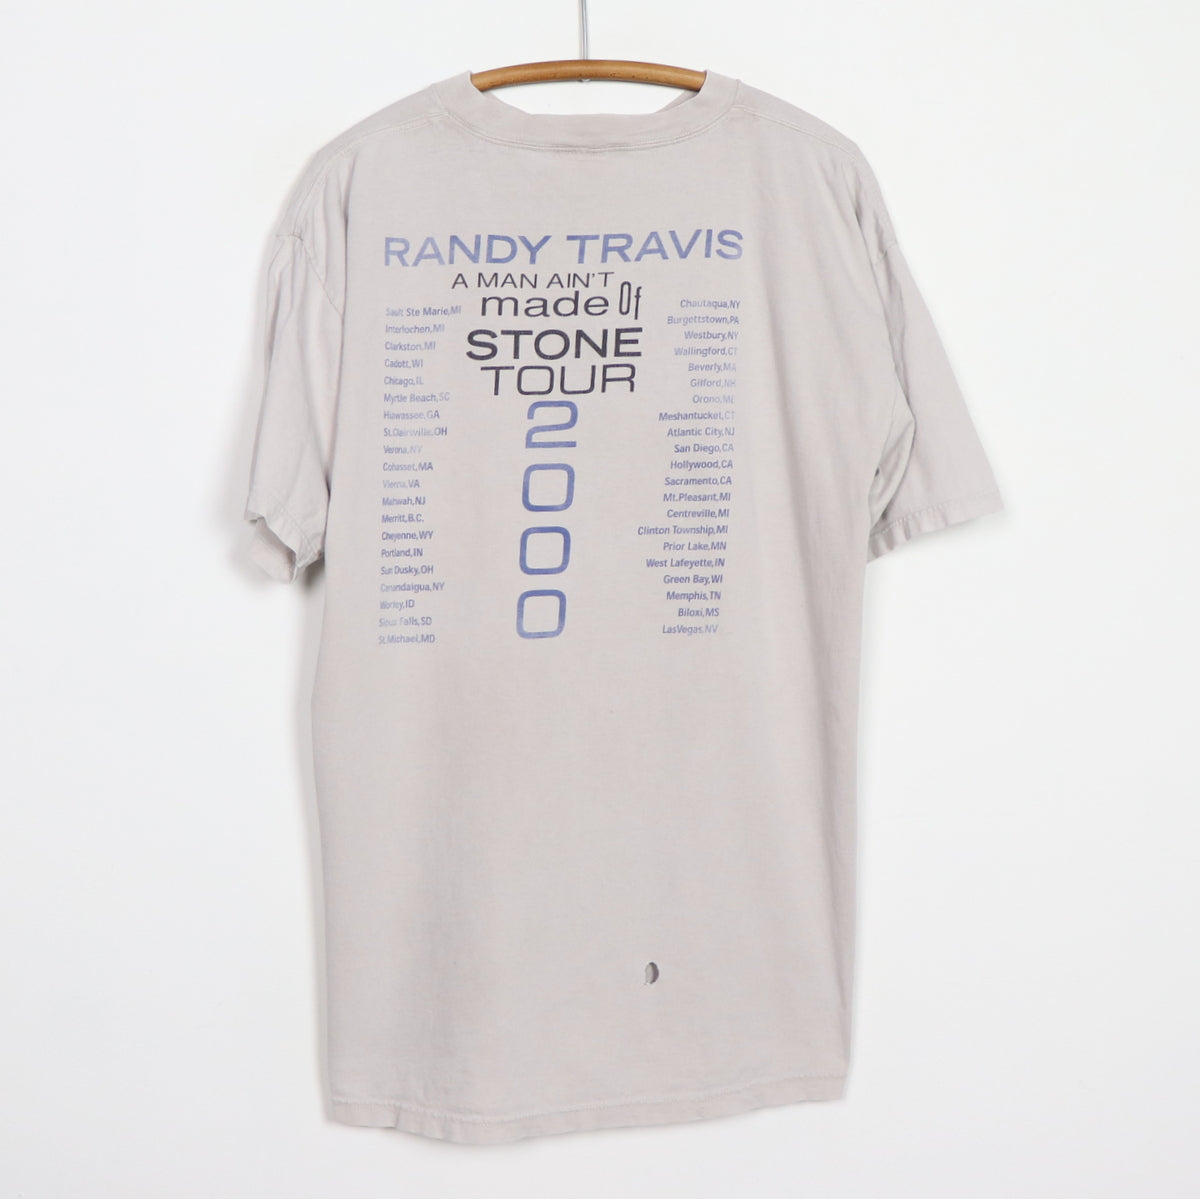 2000 Randy Travis A Man Ain't Made Of Stone Tour Shirt